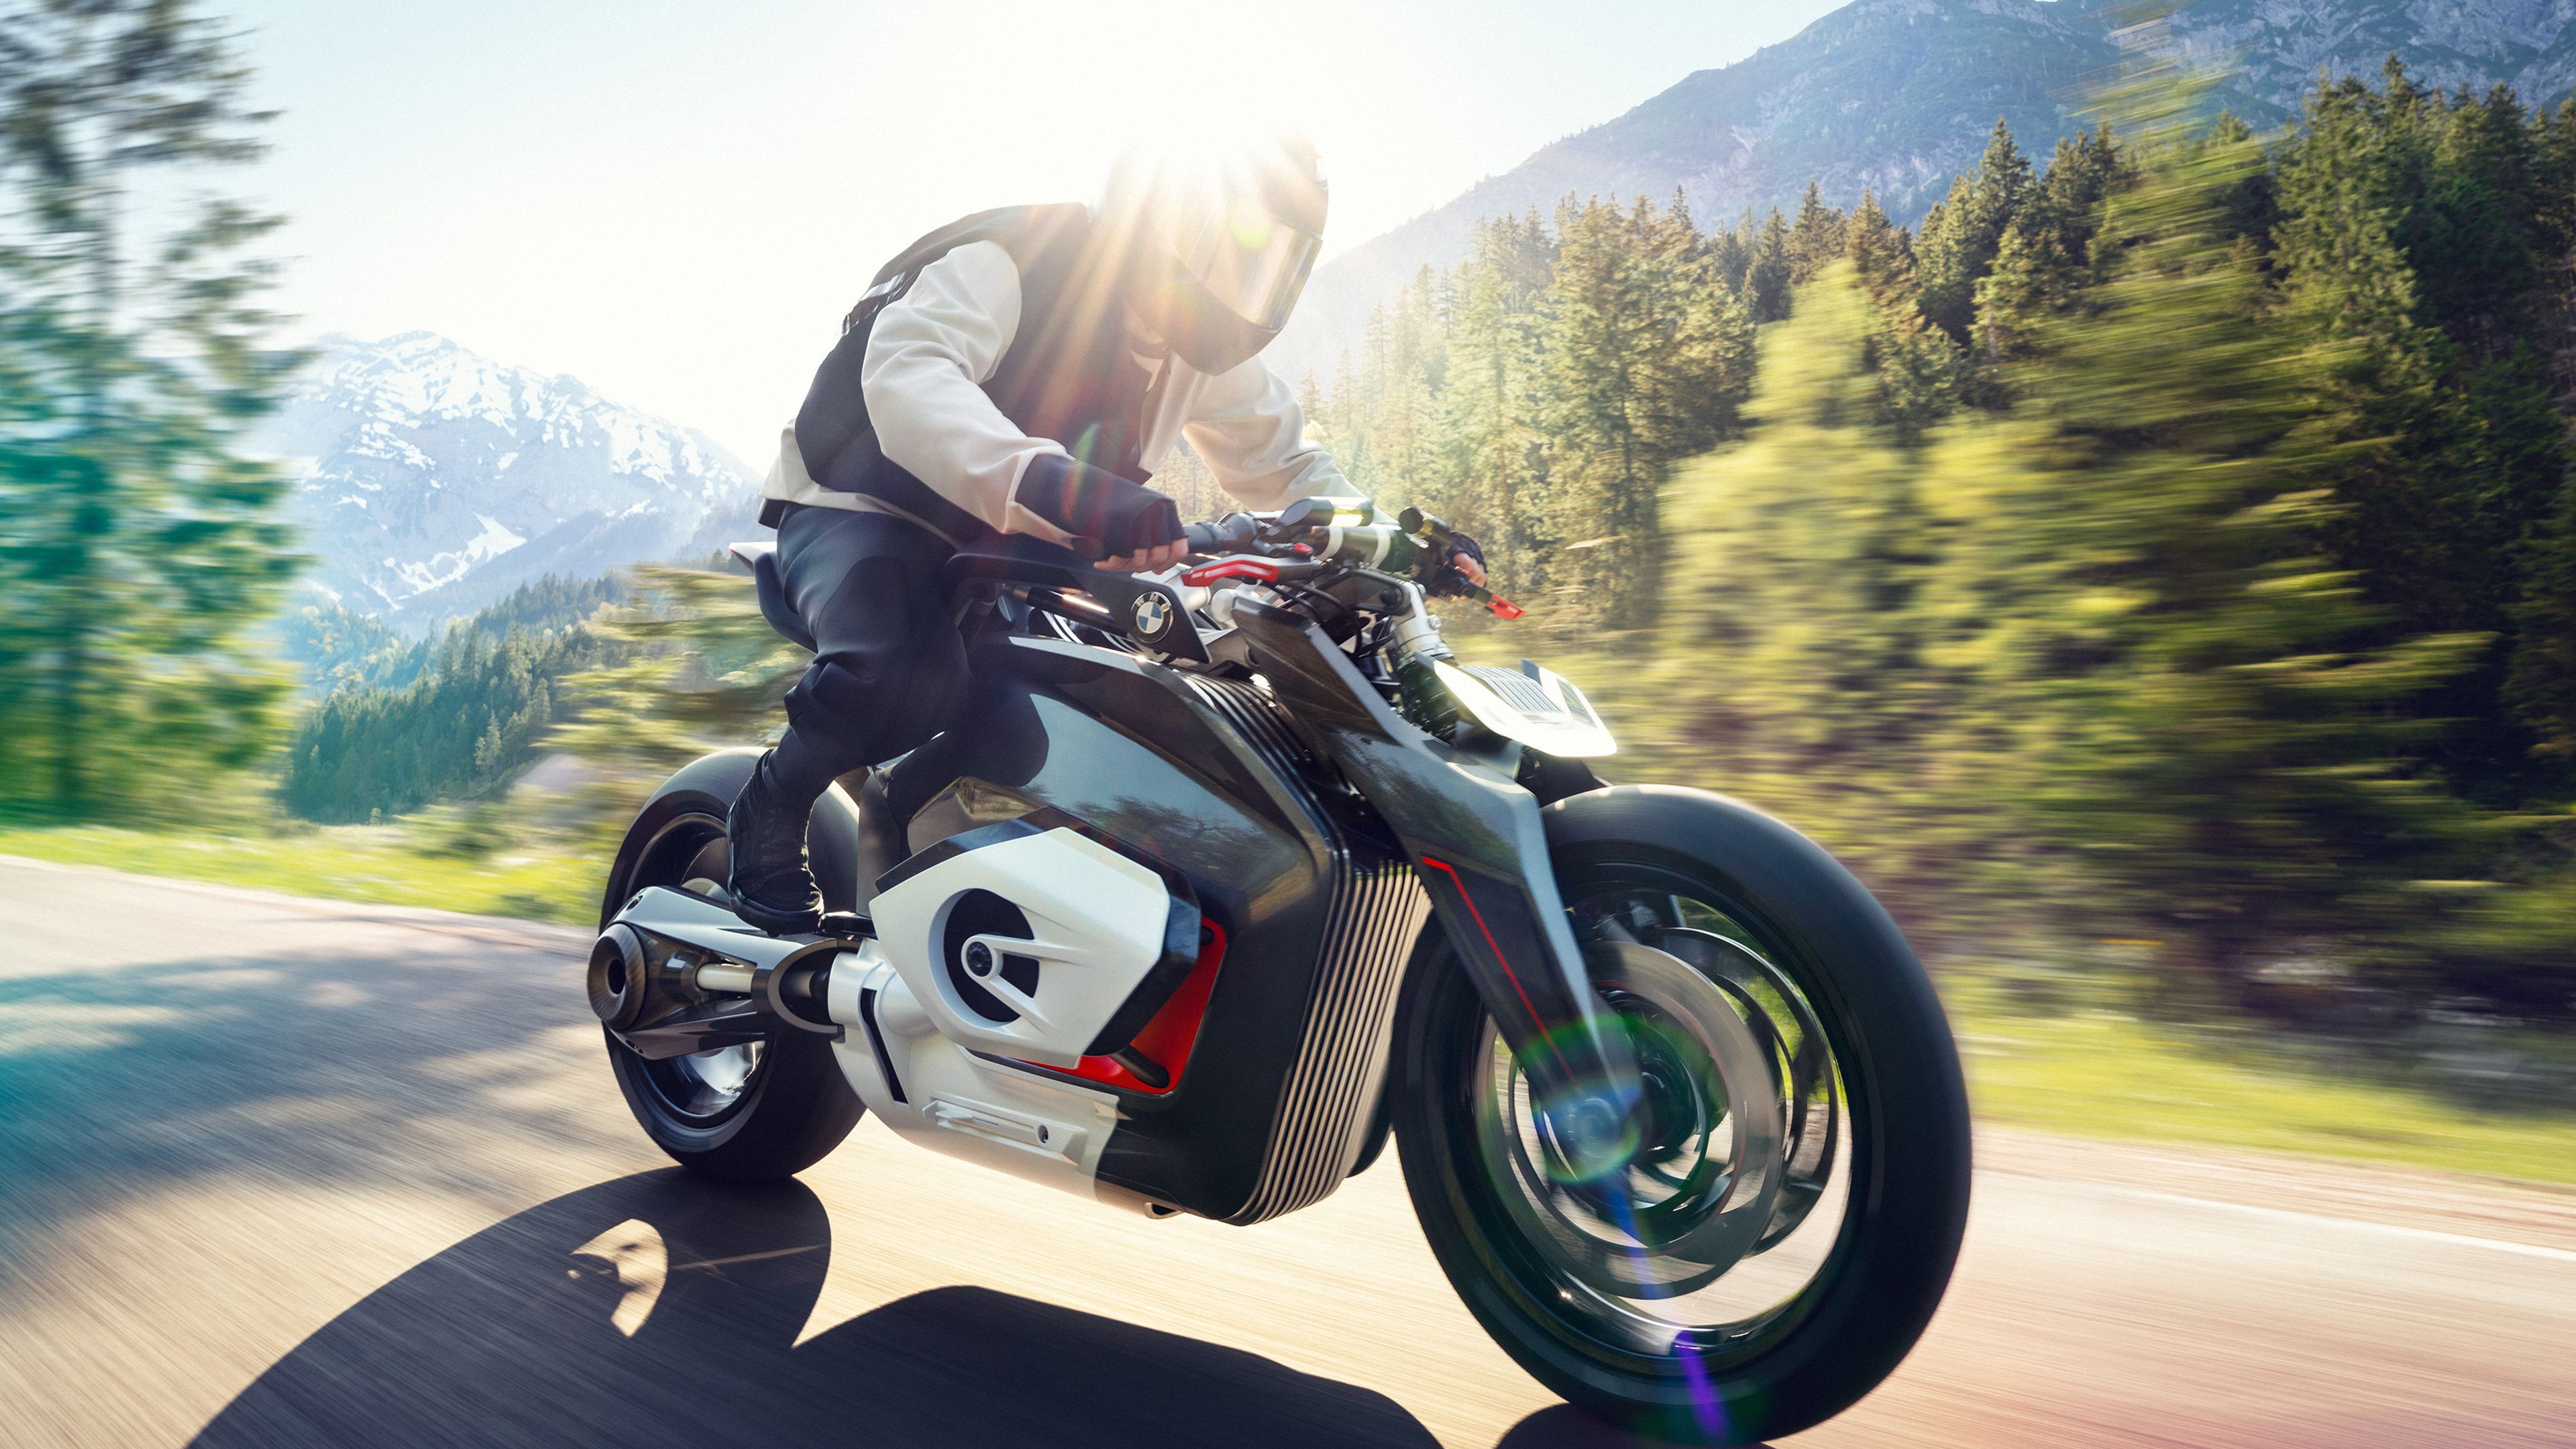 BMW Vision DC Roadster, Electric bikes, Concept bikes, Biker, 4k Free deskk wallpaper, Ultra HD